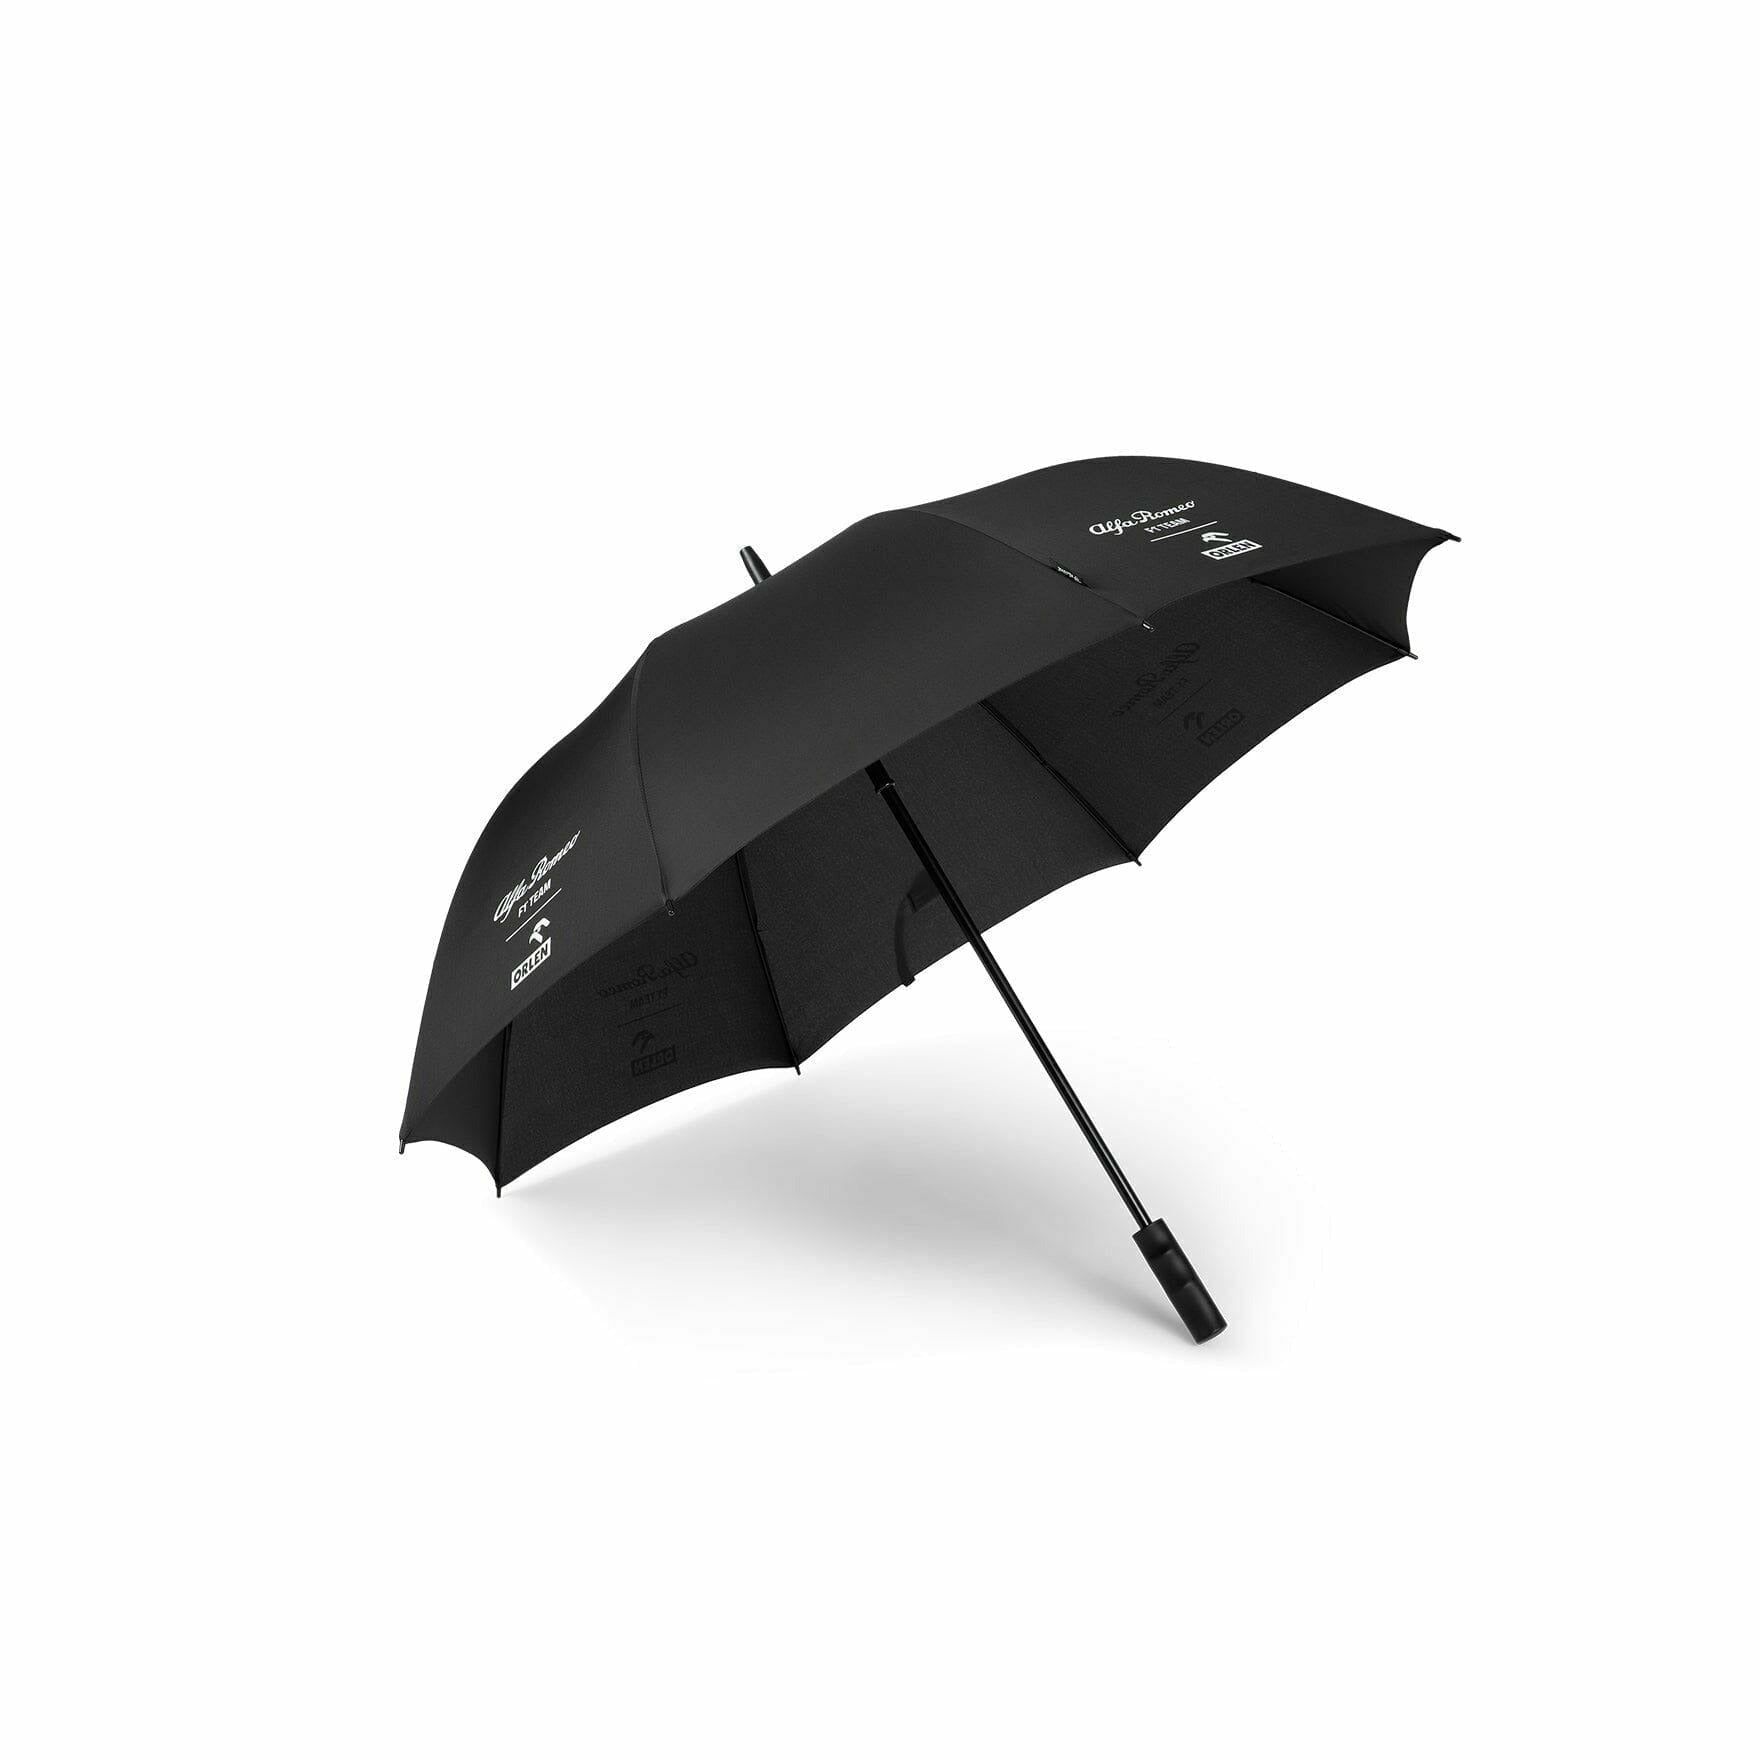 Alfa Romeo Racing F1 Golf Umbrella - Black